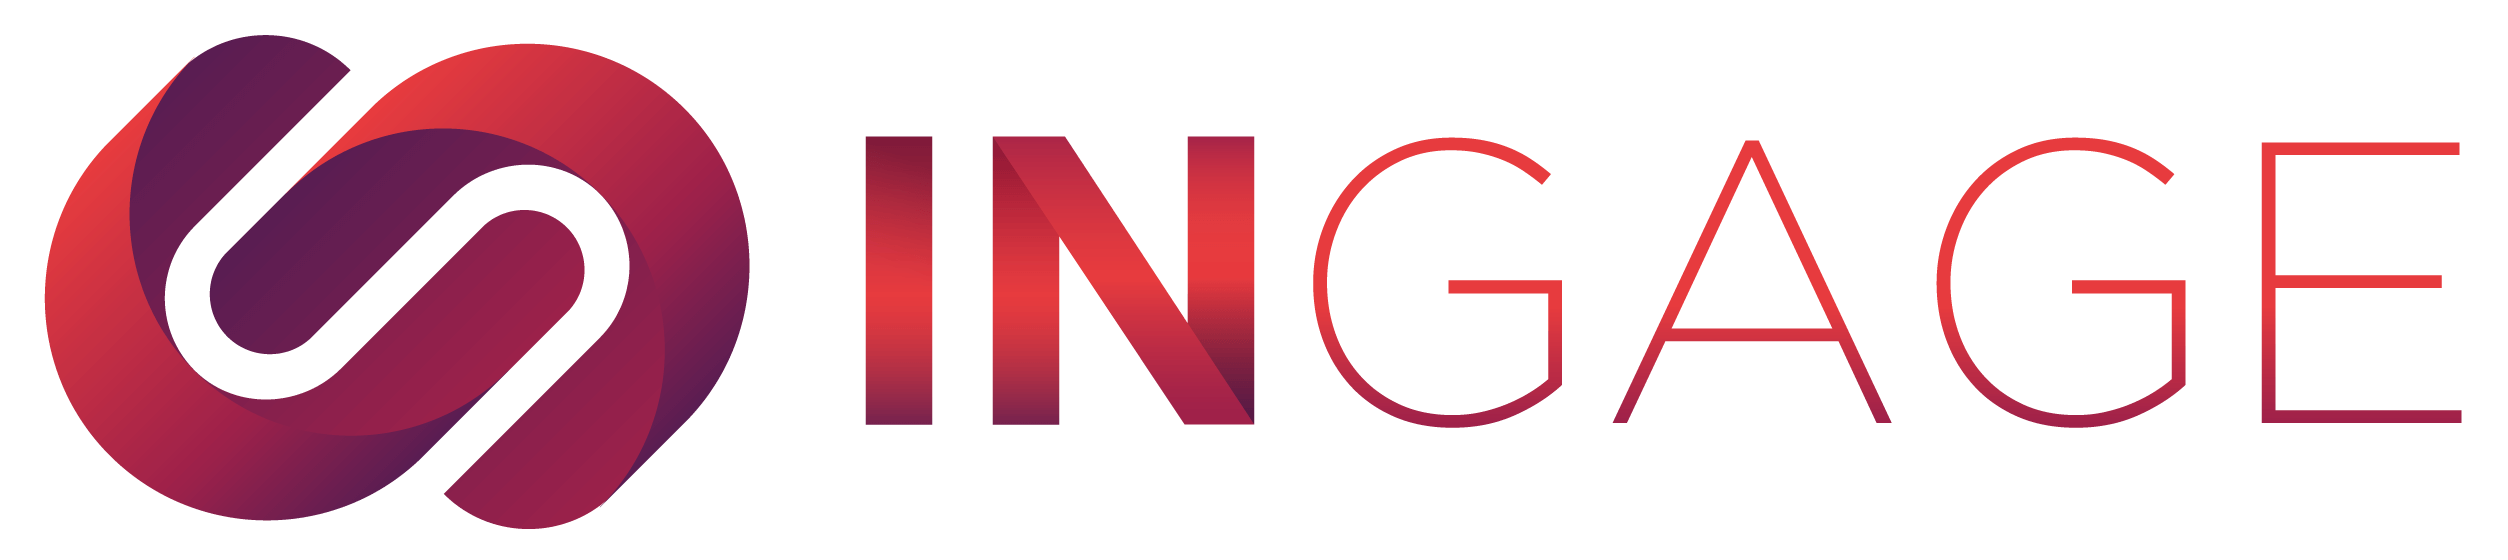 logo-ingage-principal-horizontal-2.png